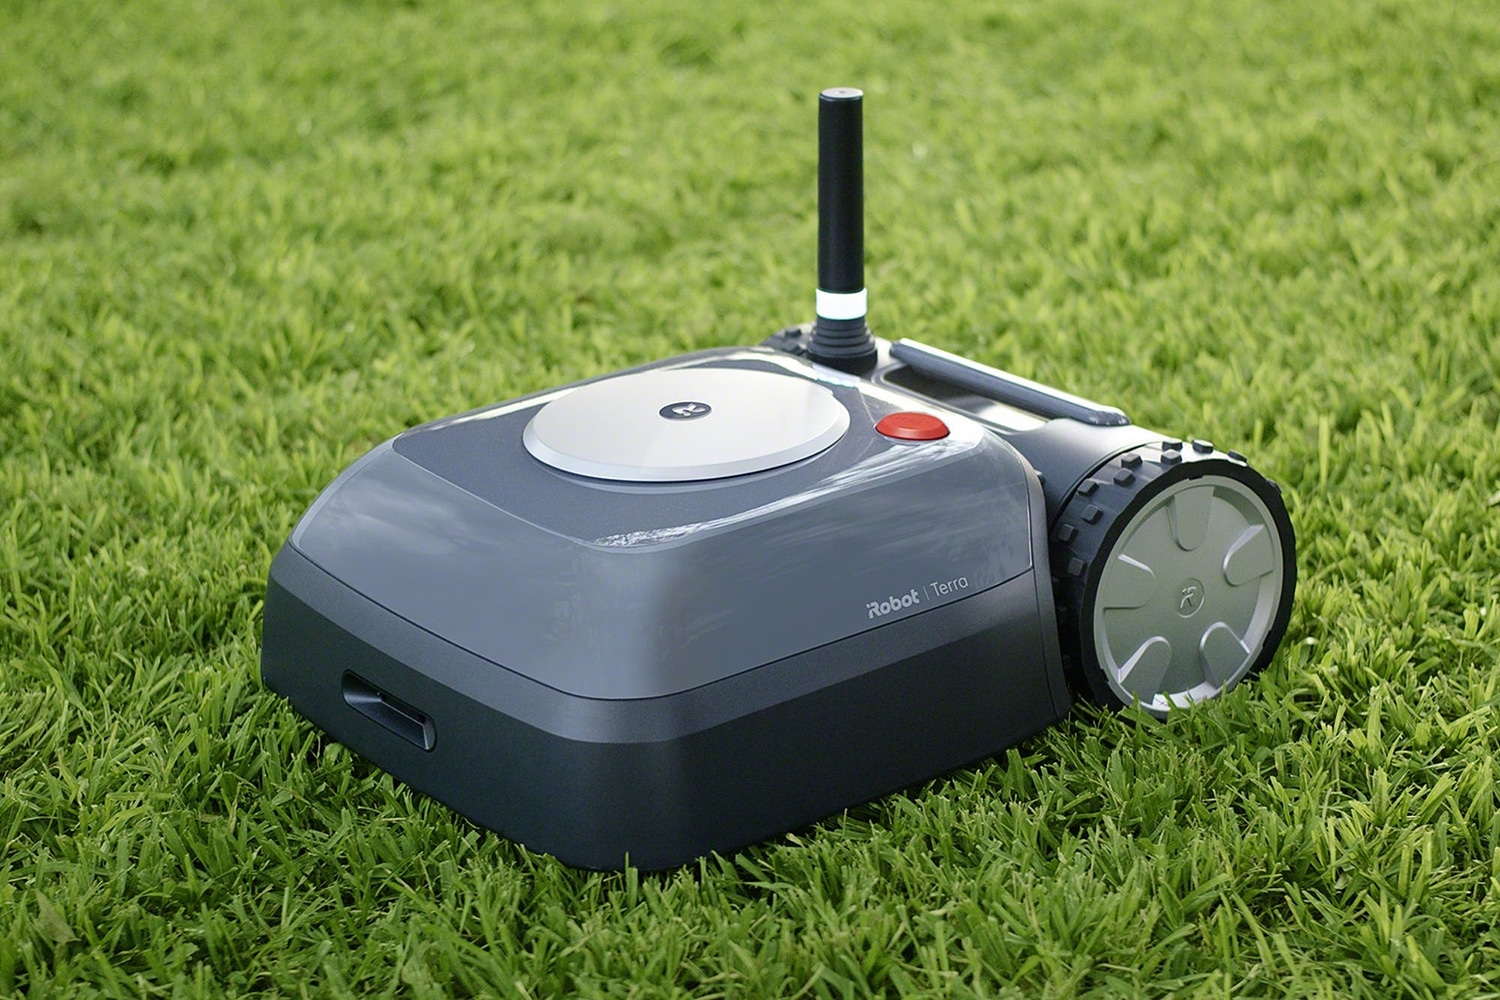 Terra robot lawnmower.